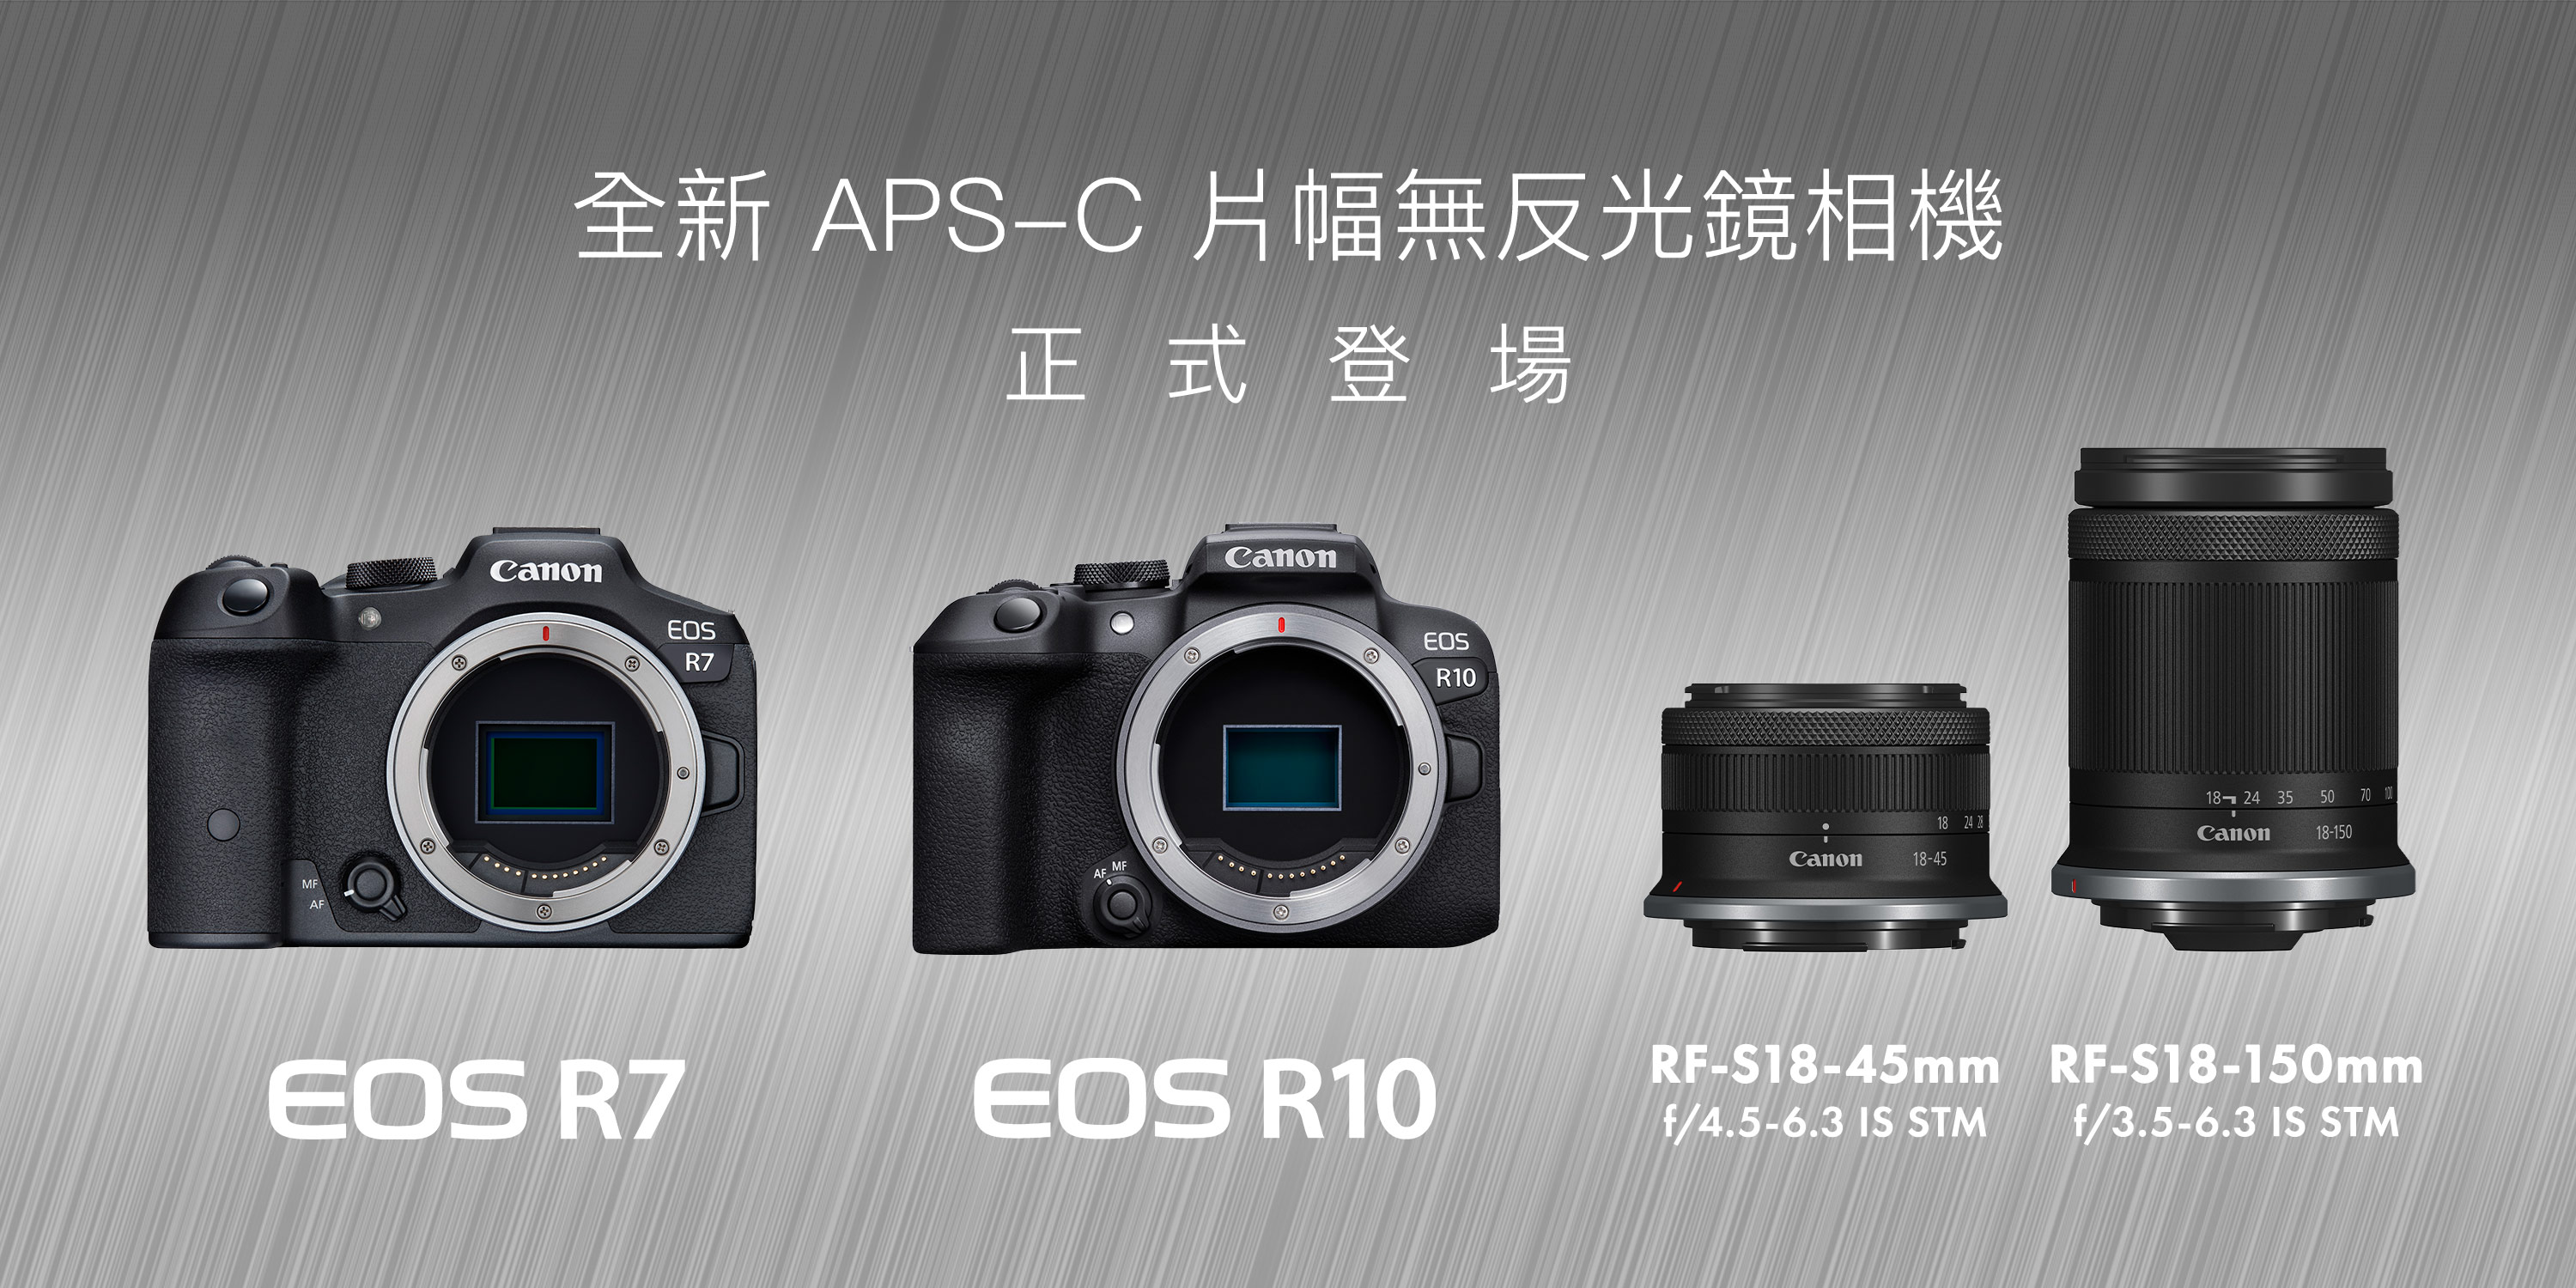 Canon 宣布兩款新機EOS R7 及EOS R10 全新APS-C 無反光鏡相機隆重推出